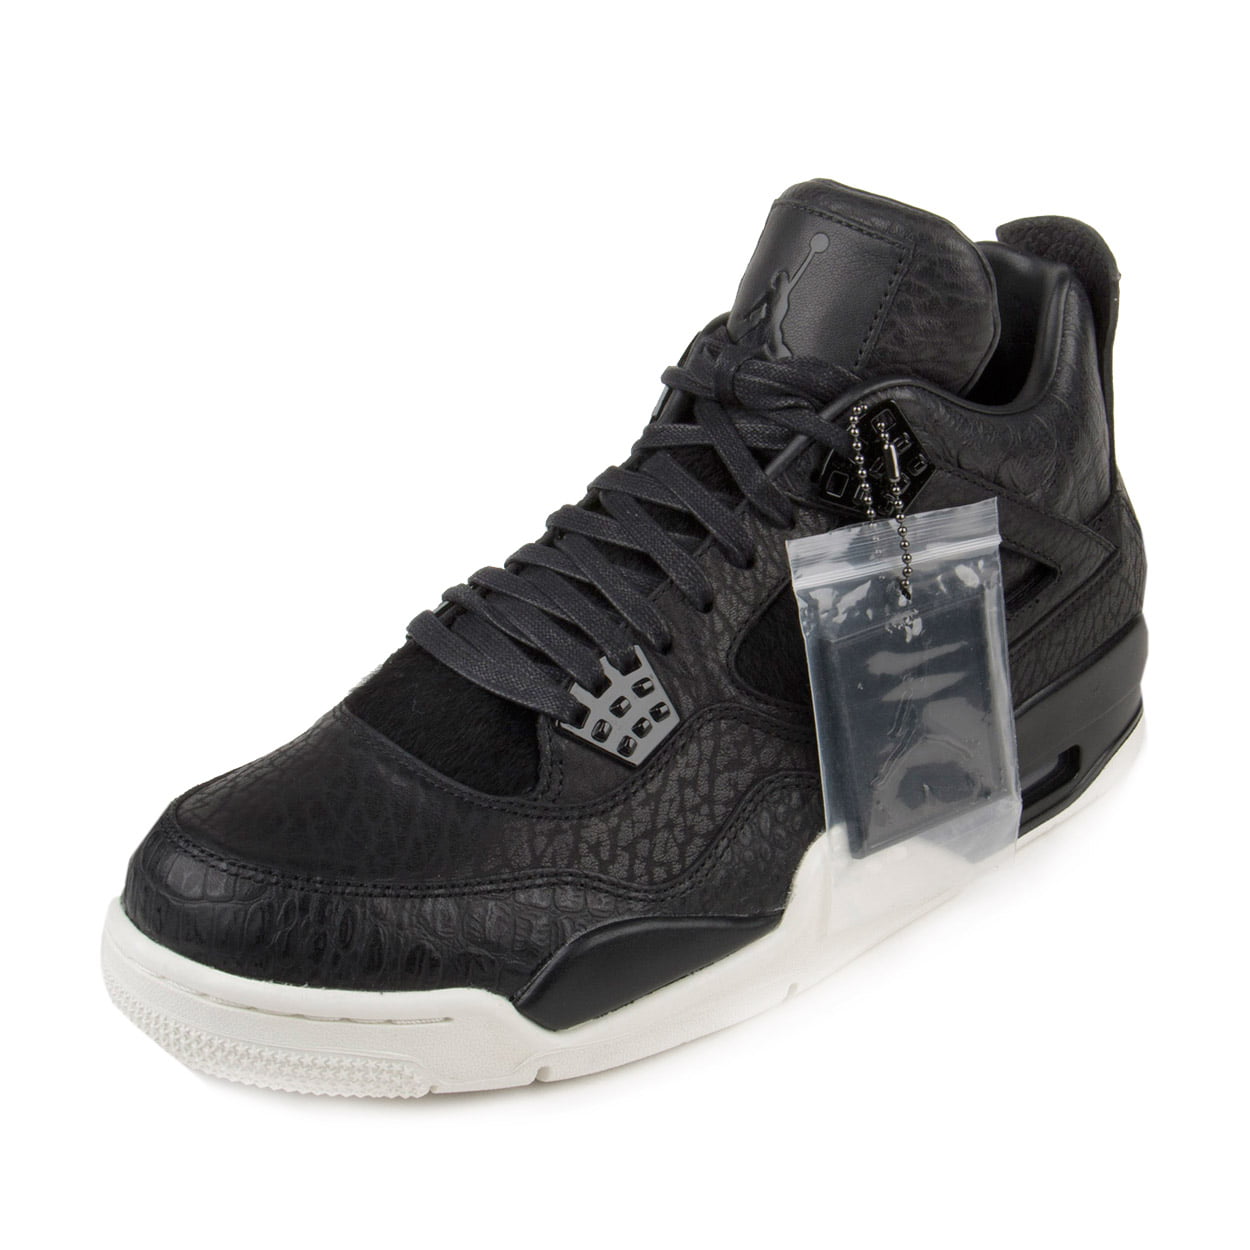 Nike - Nike Mens Air Jordan 4 Retro Premium "Pinnacle" Black/Sail